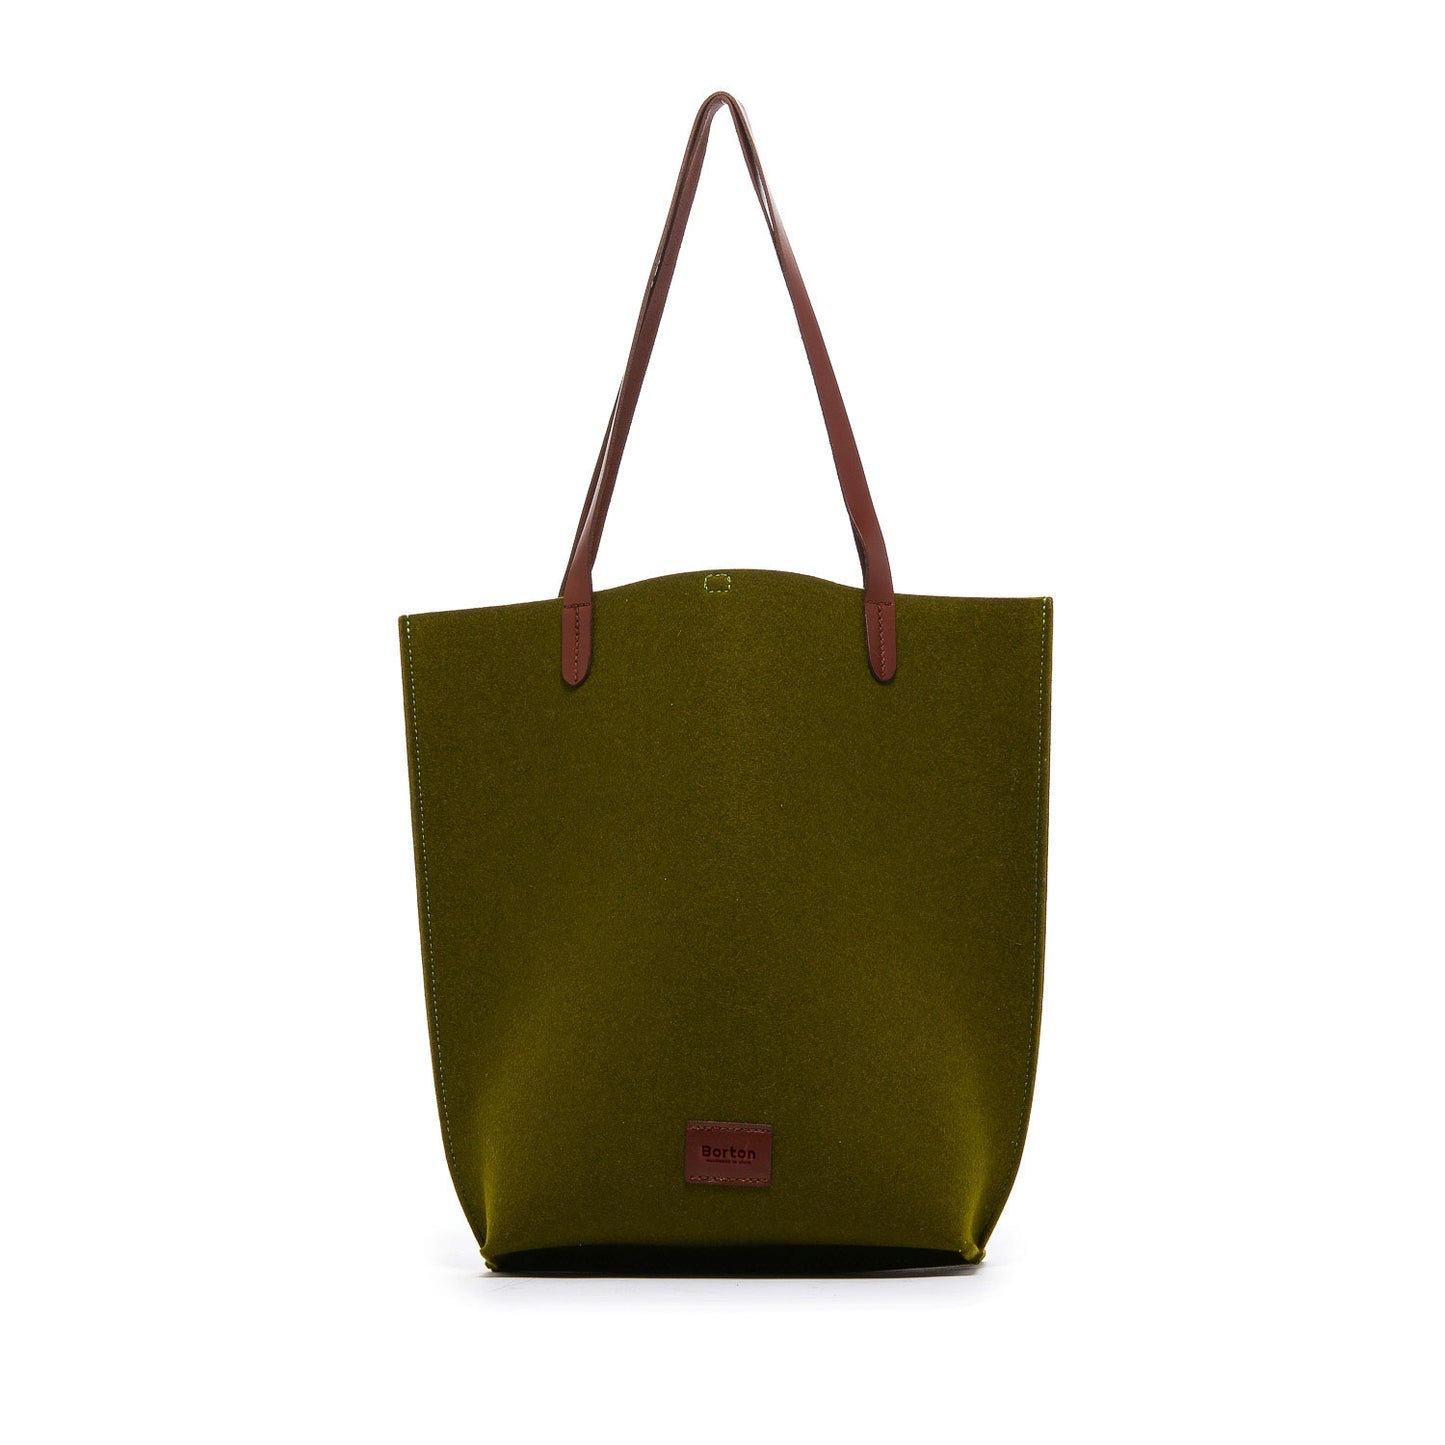 Mery Tote Bag Green Felt & Tan Leather